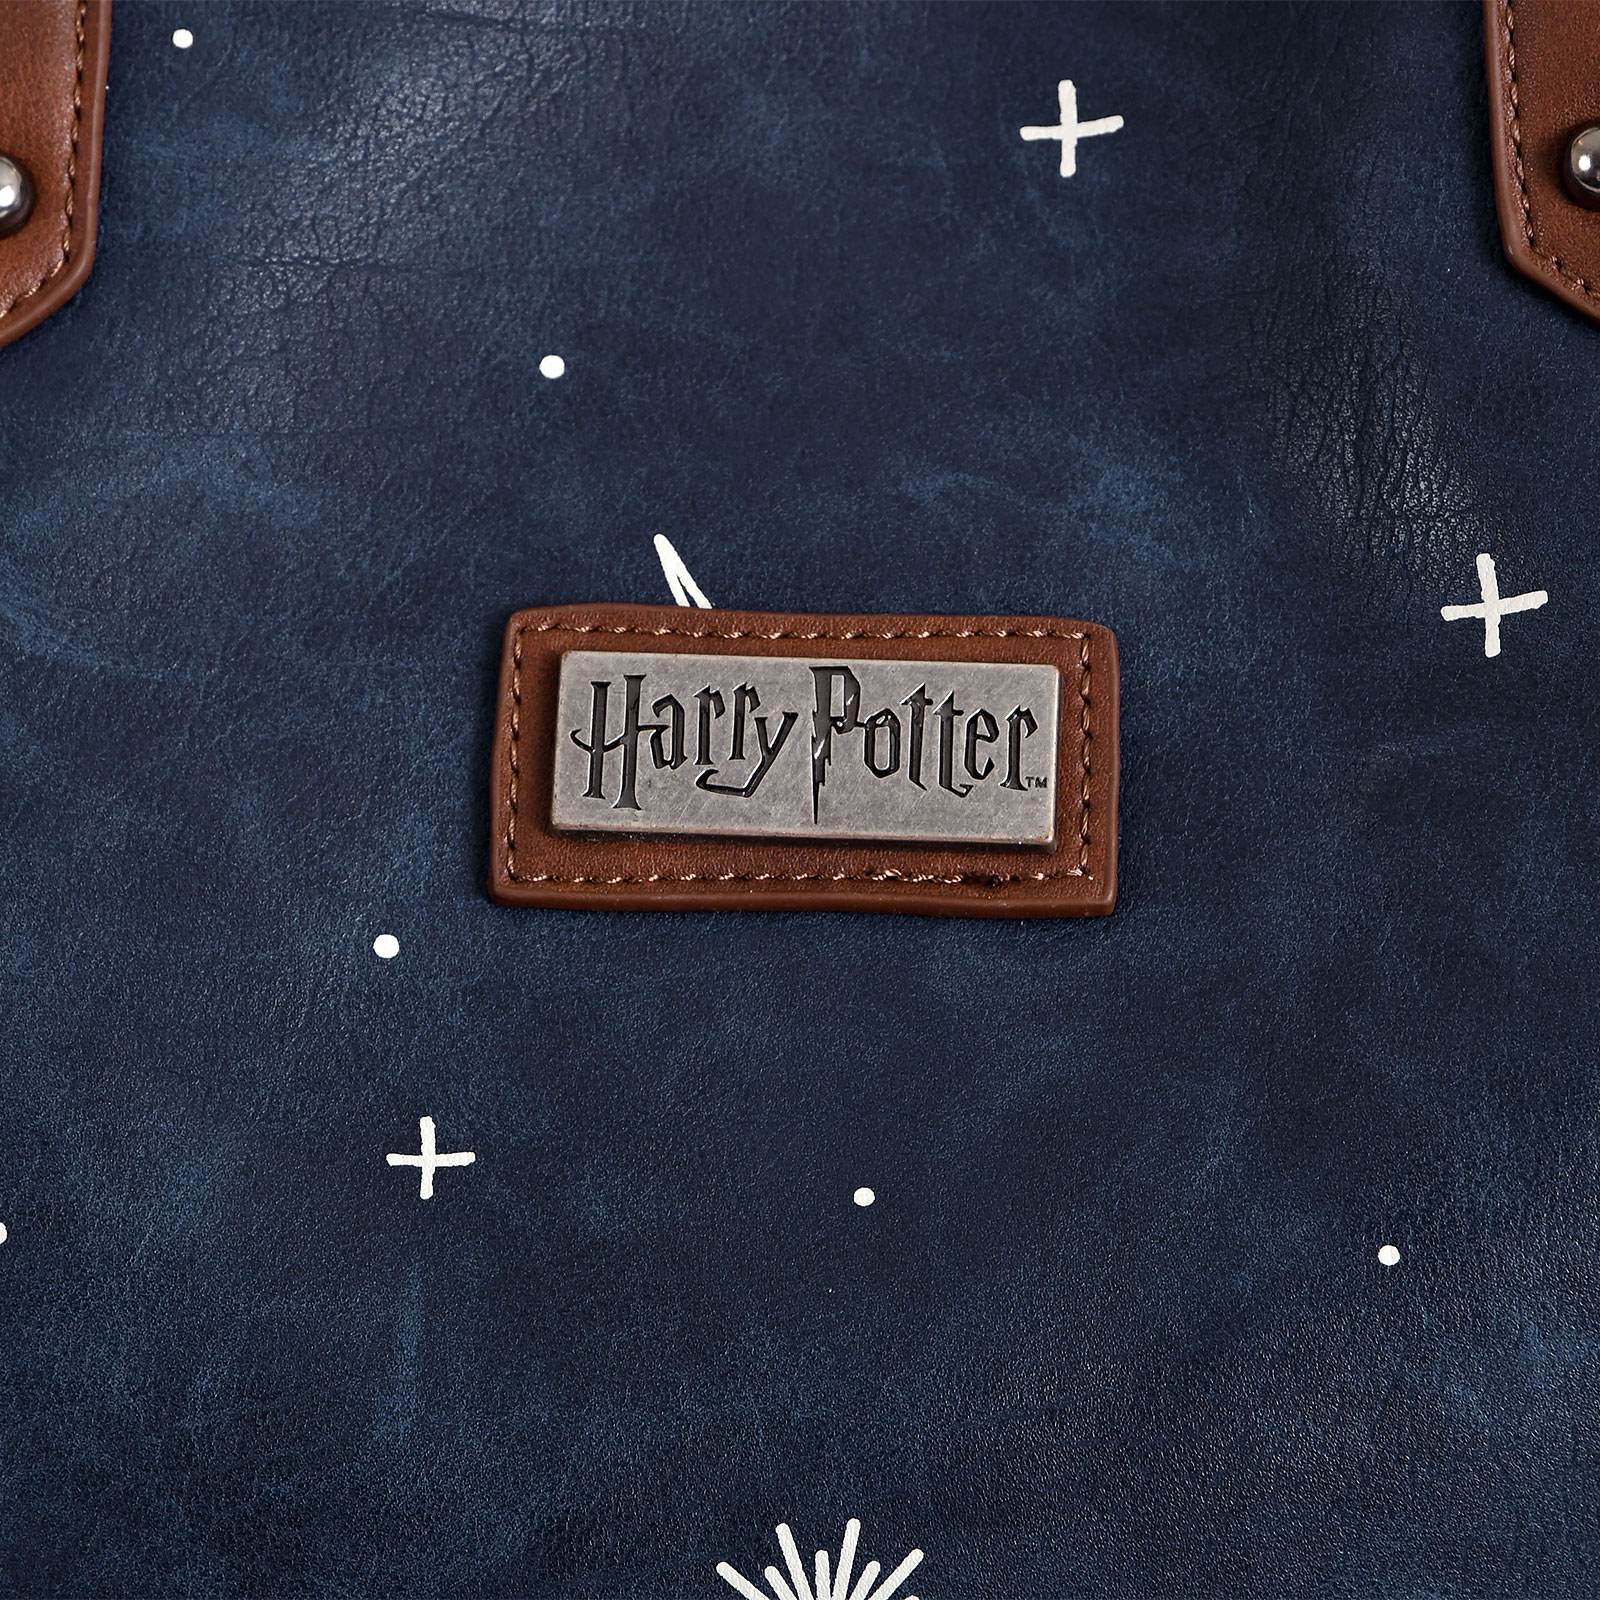 Harry Potter - Sluiperskaart Shopper Tas